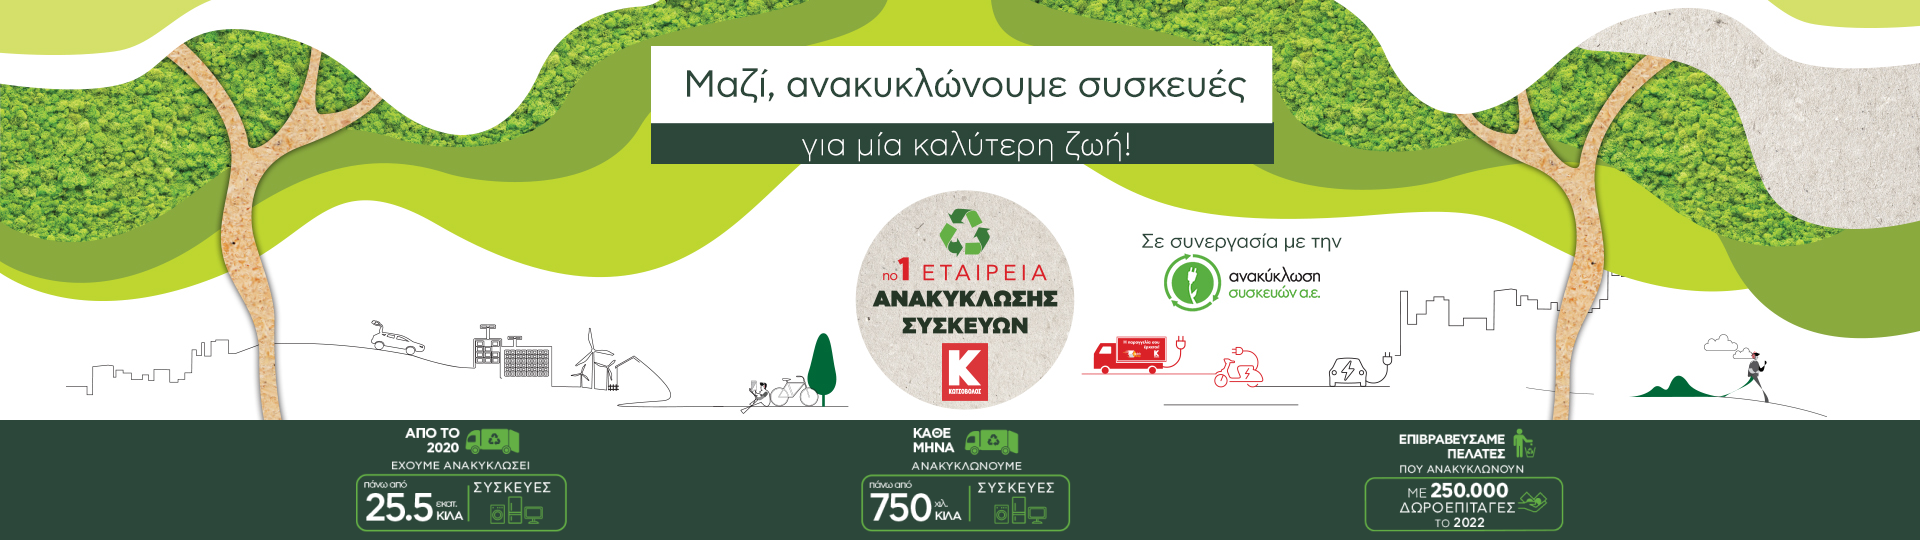 Ανακύκλωση ΜΑΖΙ - Second Home Kotsovolos